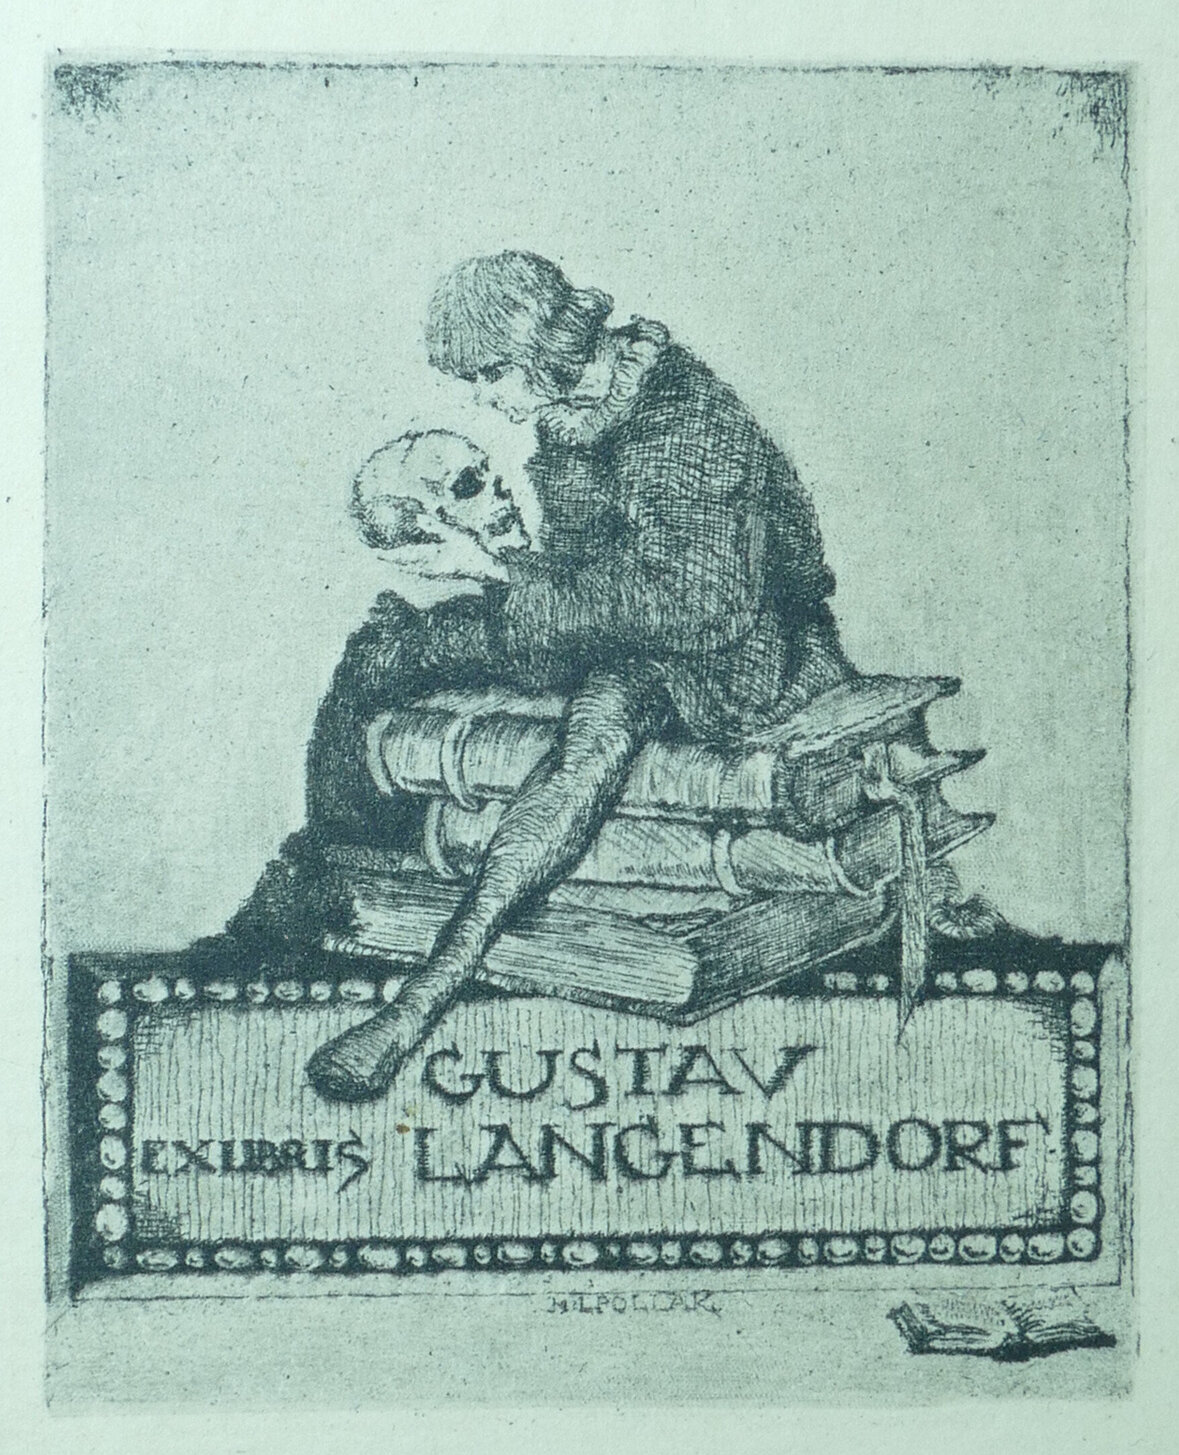 Das Exlibris von Gustav Langendorf. Alles in einem grün blau stich. Man sieht Hamlet einen Schädel haltend auf drei Büchern sitzten die auf einem von Perlen umrandeten kasten liegen auf dem EXLIBRIS Gustav Langendorf steht.